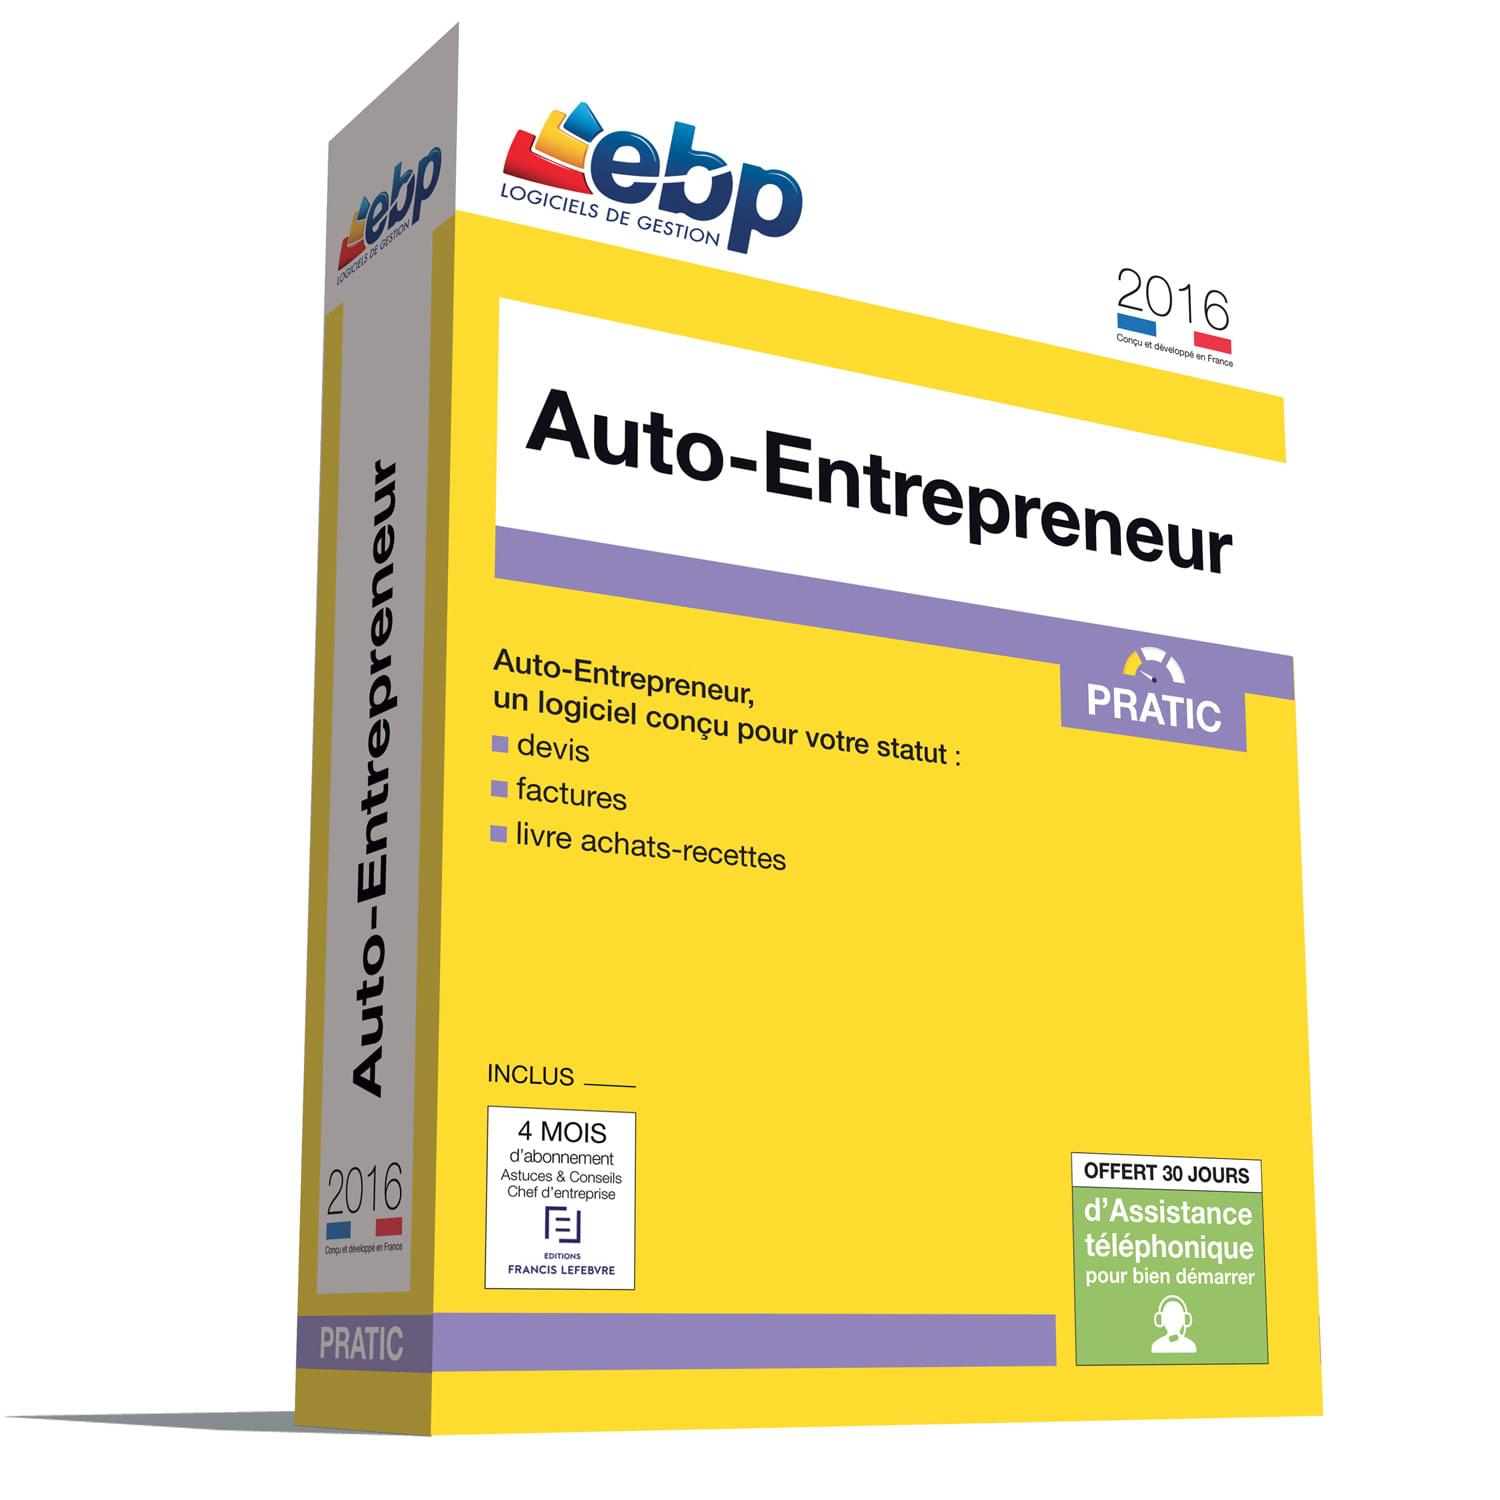 Logiciel application EBP Auto-Entrepreneur Pratic 2016